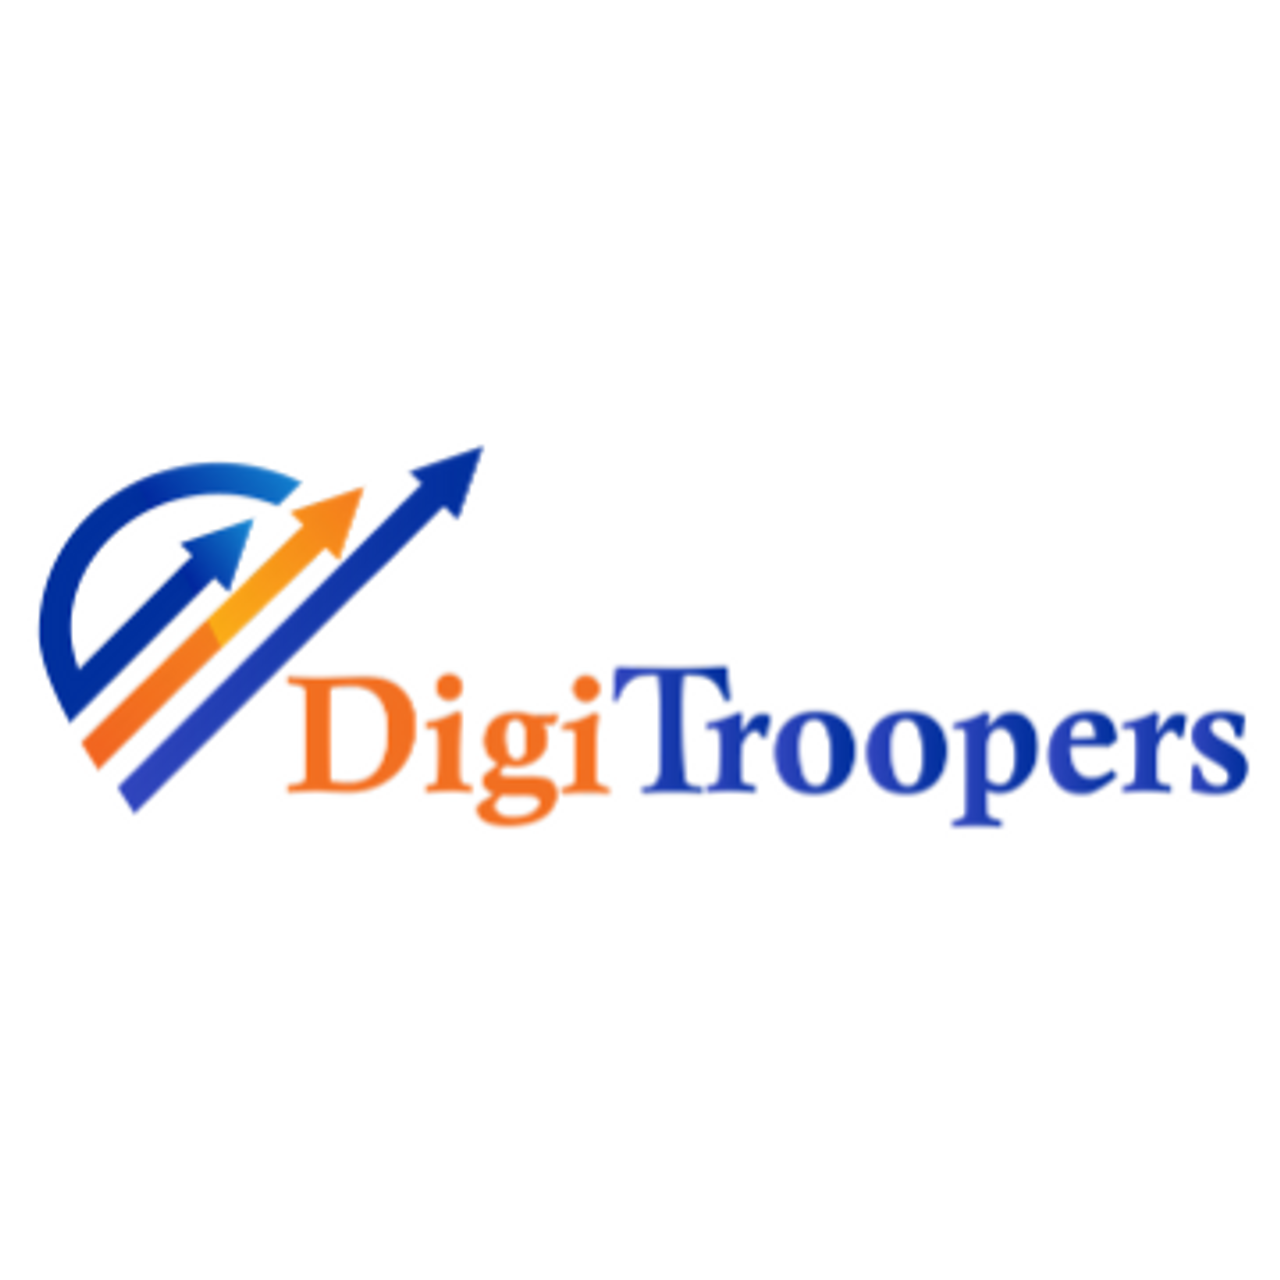 DigiTroopers